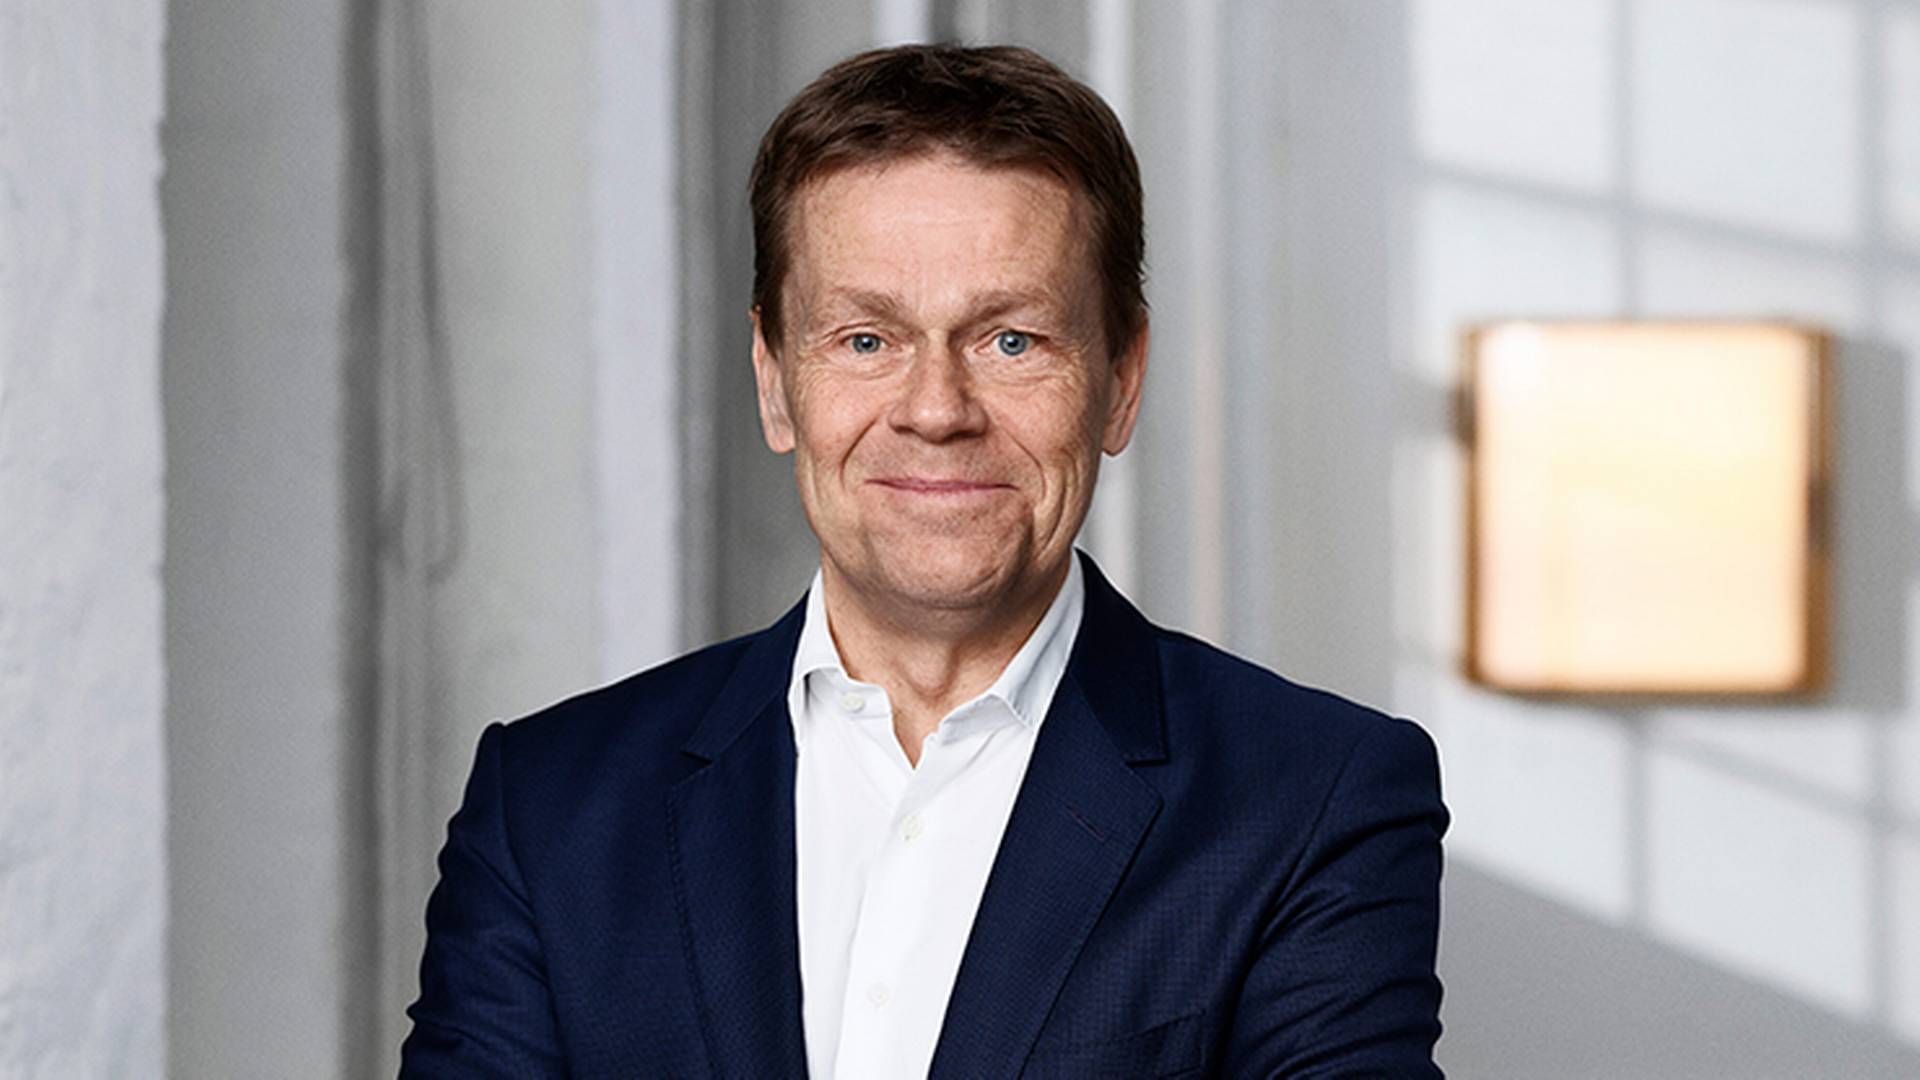 Lars Folkmann overtog stillingen som topchef hos Forenede-koncernen i begyndelsen af 2021. Tidligere har han siddet i direktionen hos ISS. | Foto: PR / Forenede